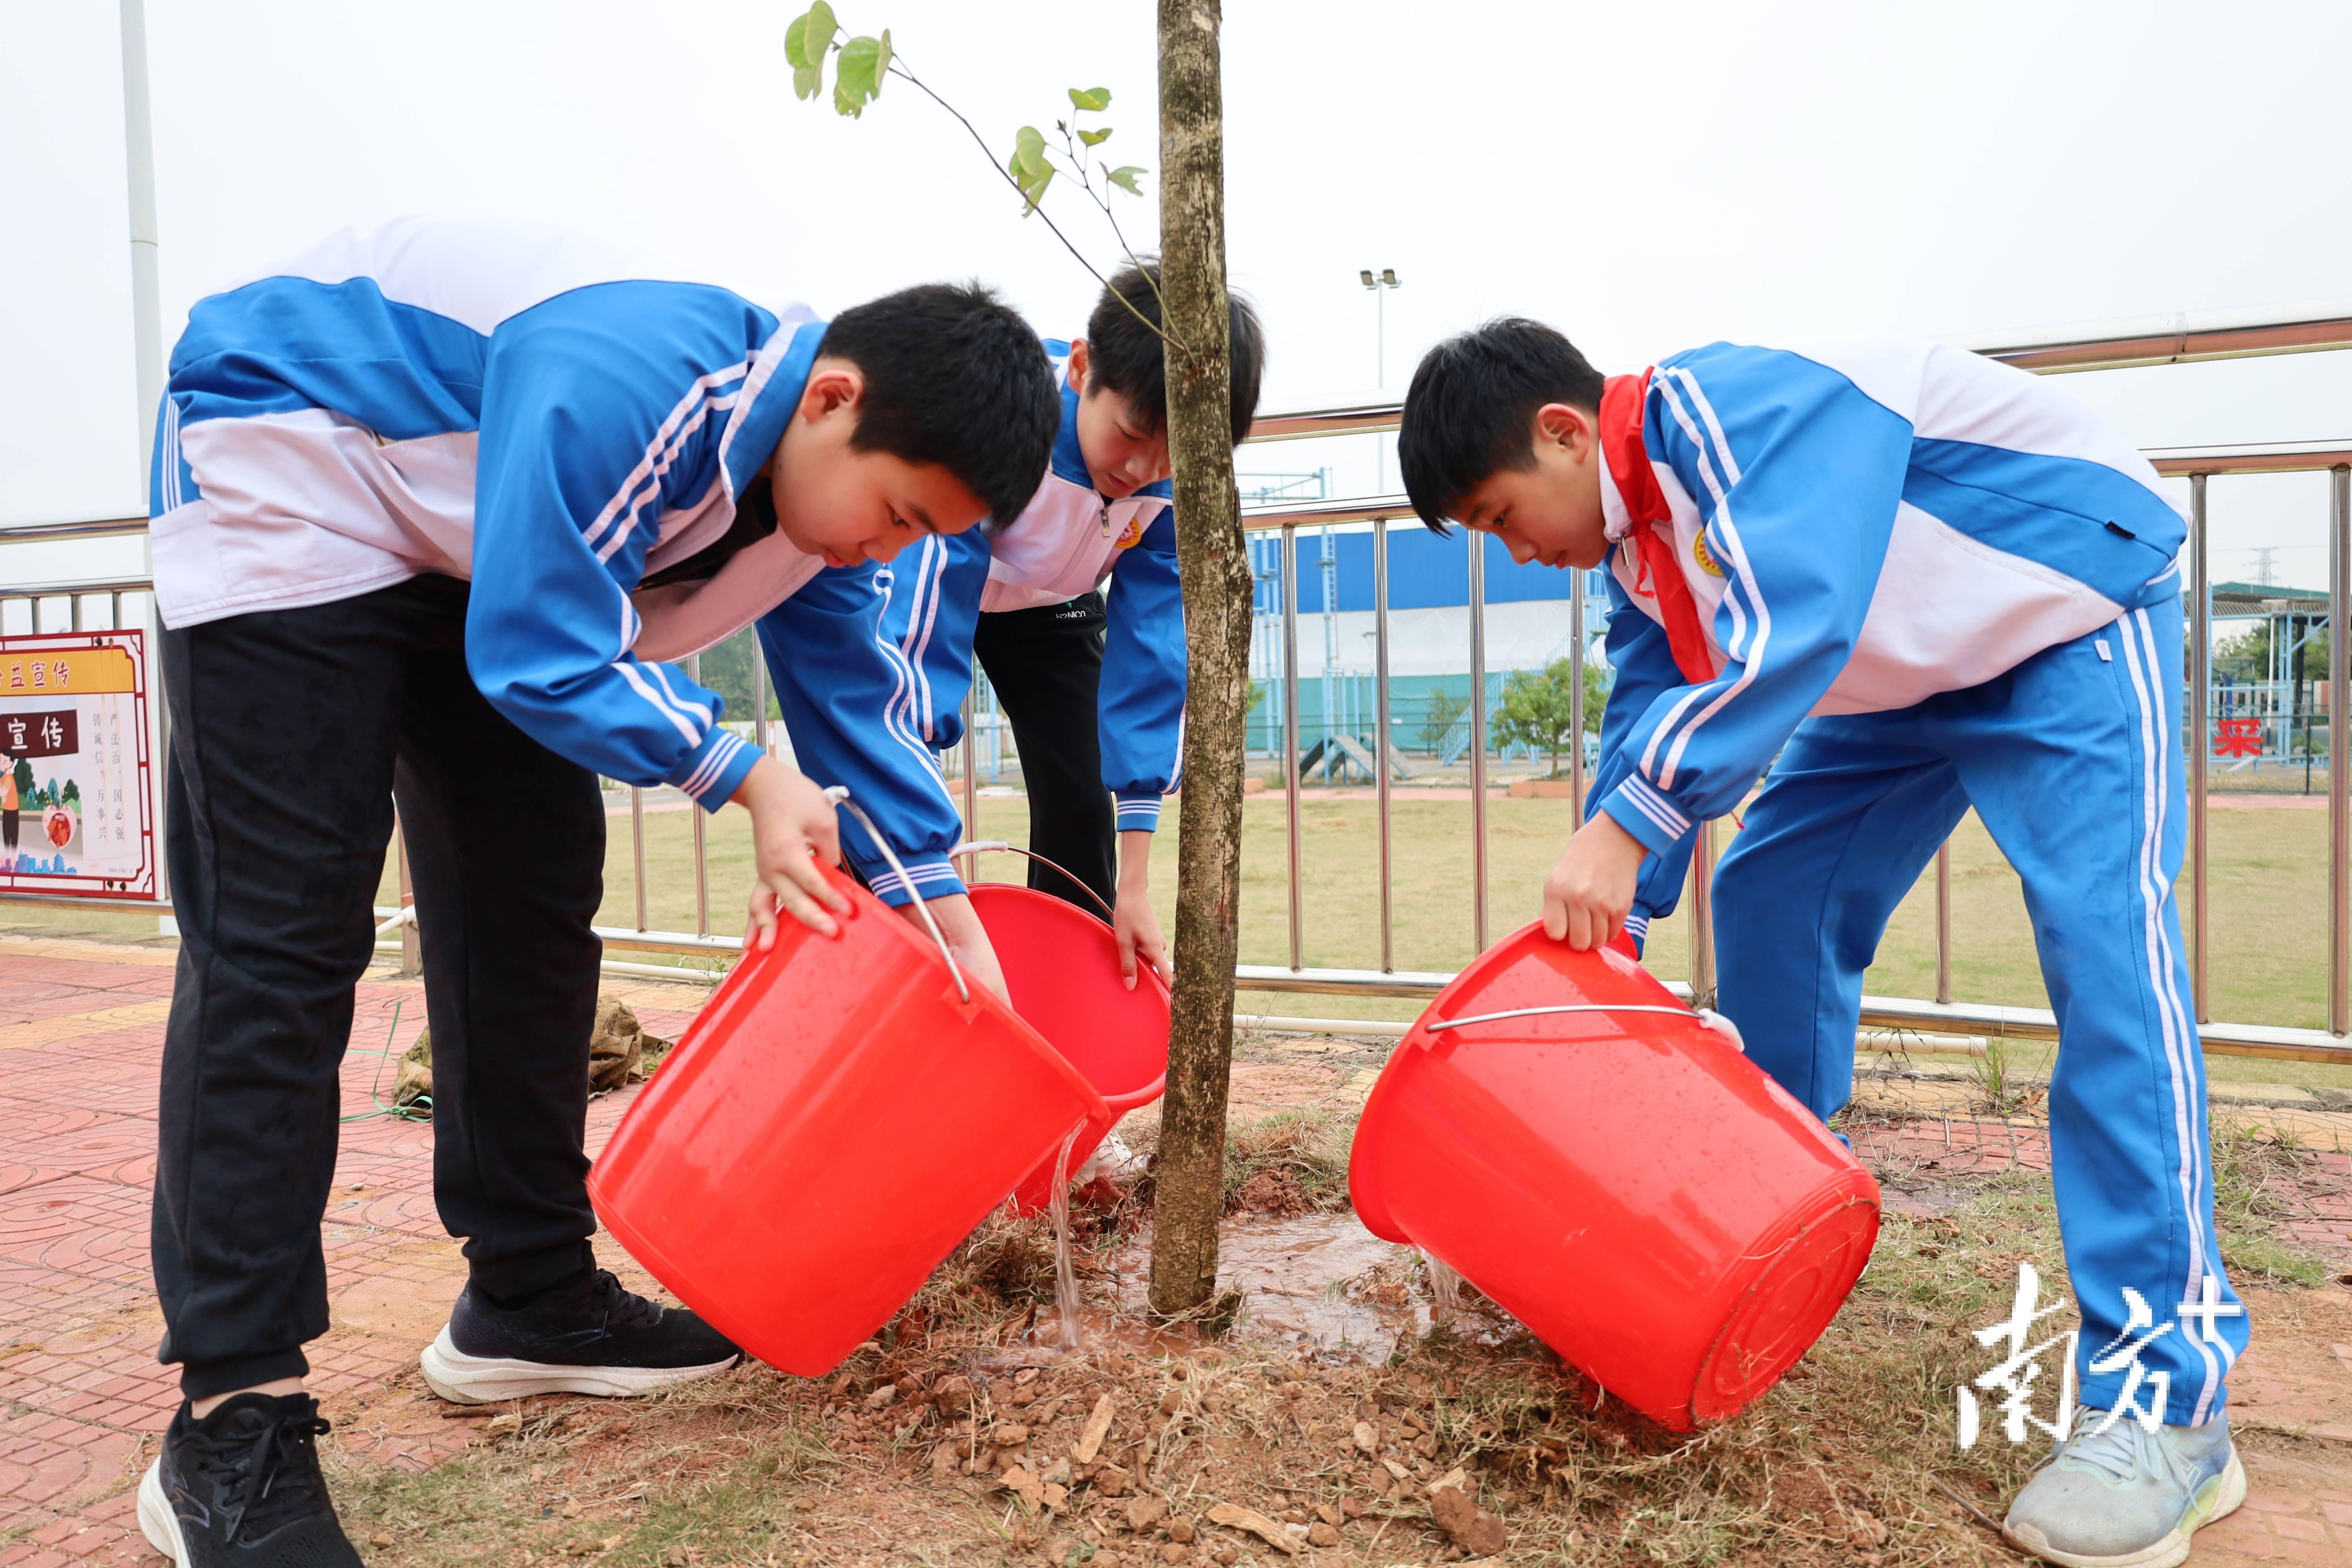 通过参与植树活动,我们可以为美化校园环境作出贡献,同时也可以净化